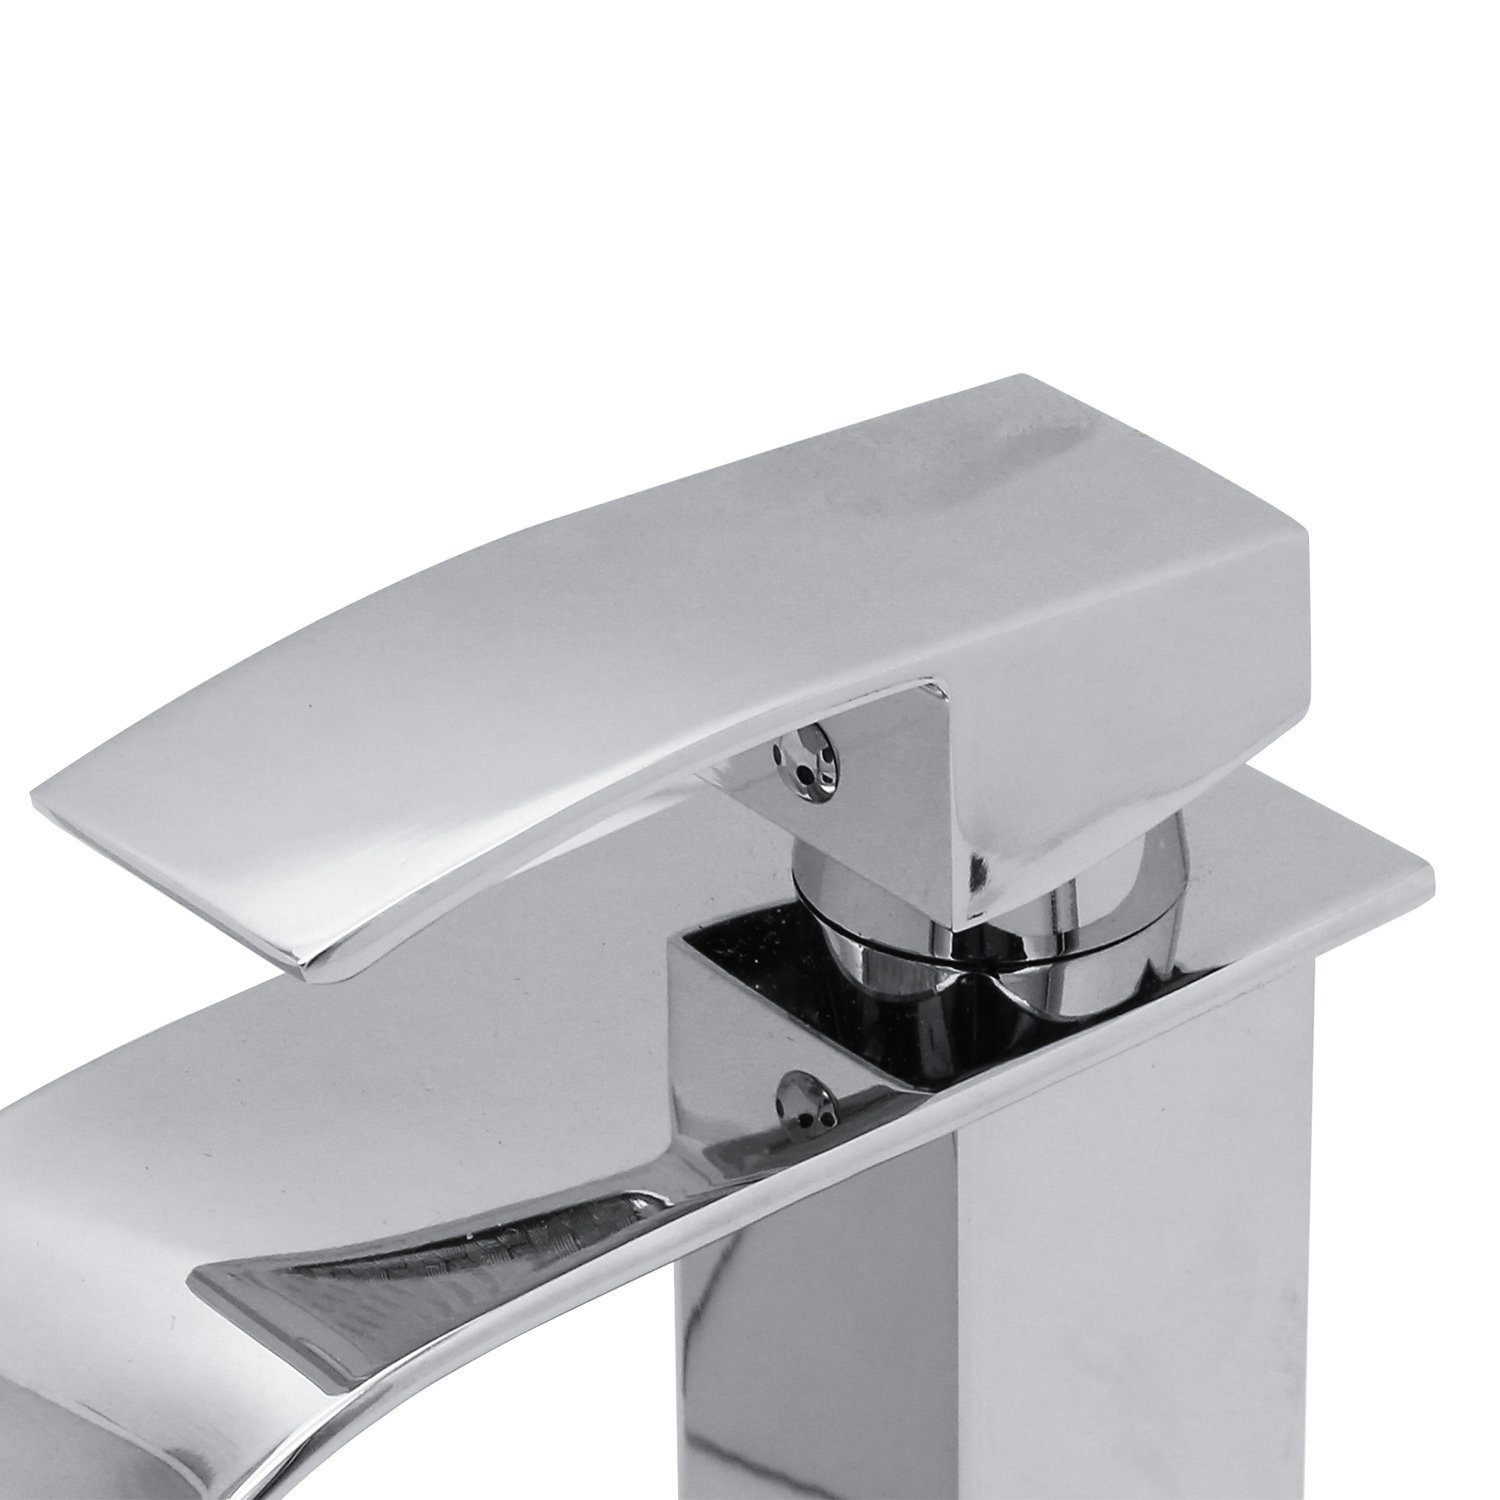 Clanmacy Waschtischarmatur Wasserhahn Hochdruck Waschtischmischer Bad Einhebelmischer Armatur Messing Mischbatterie Spültisch